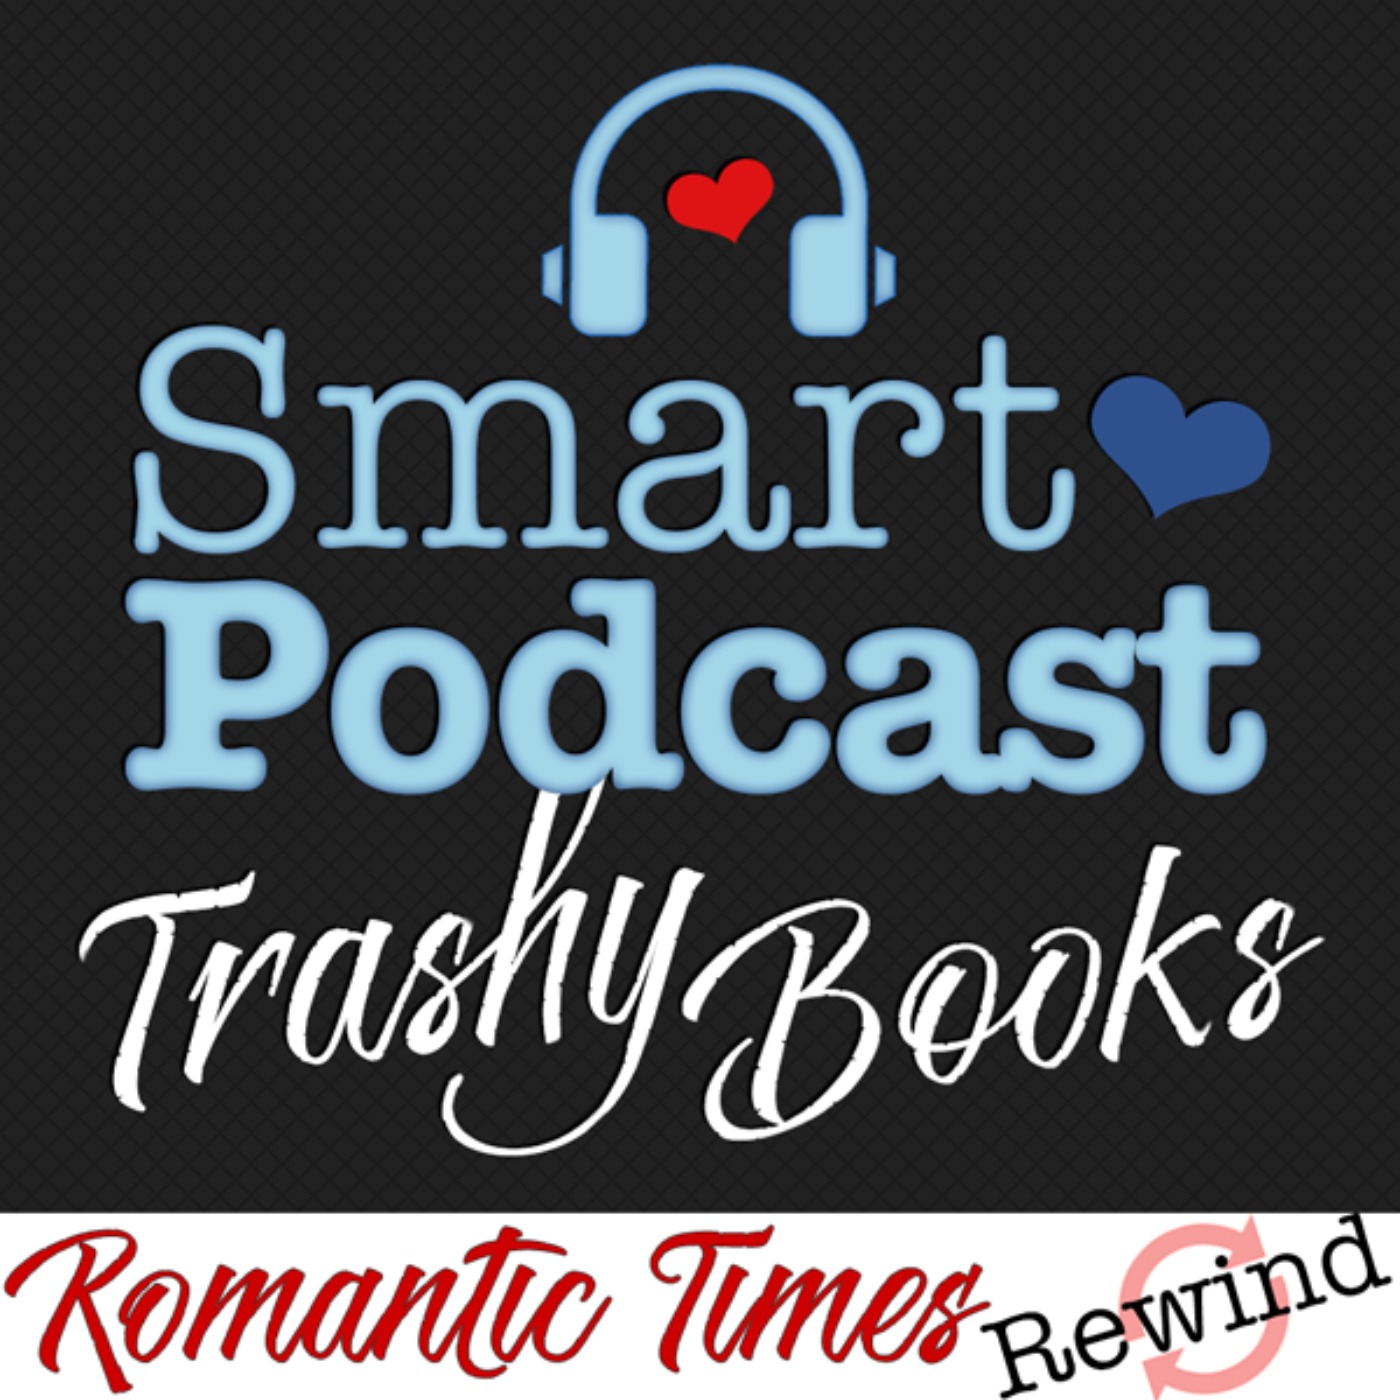 587. Romantic Times Rewind: June 2014 Reviews